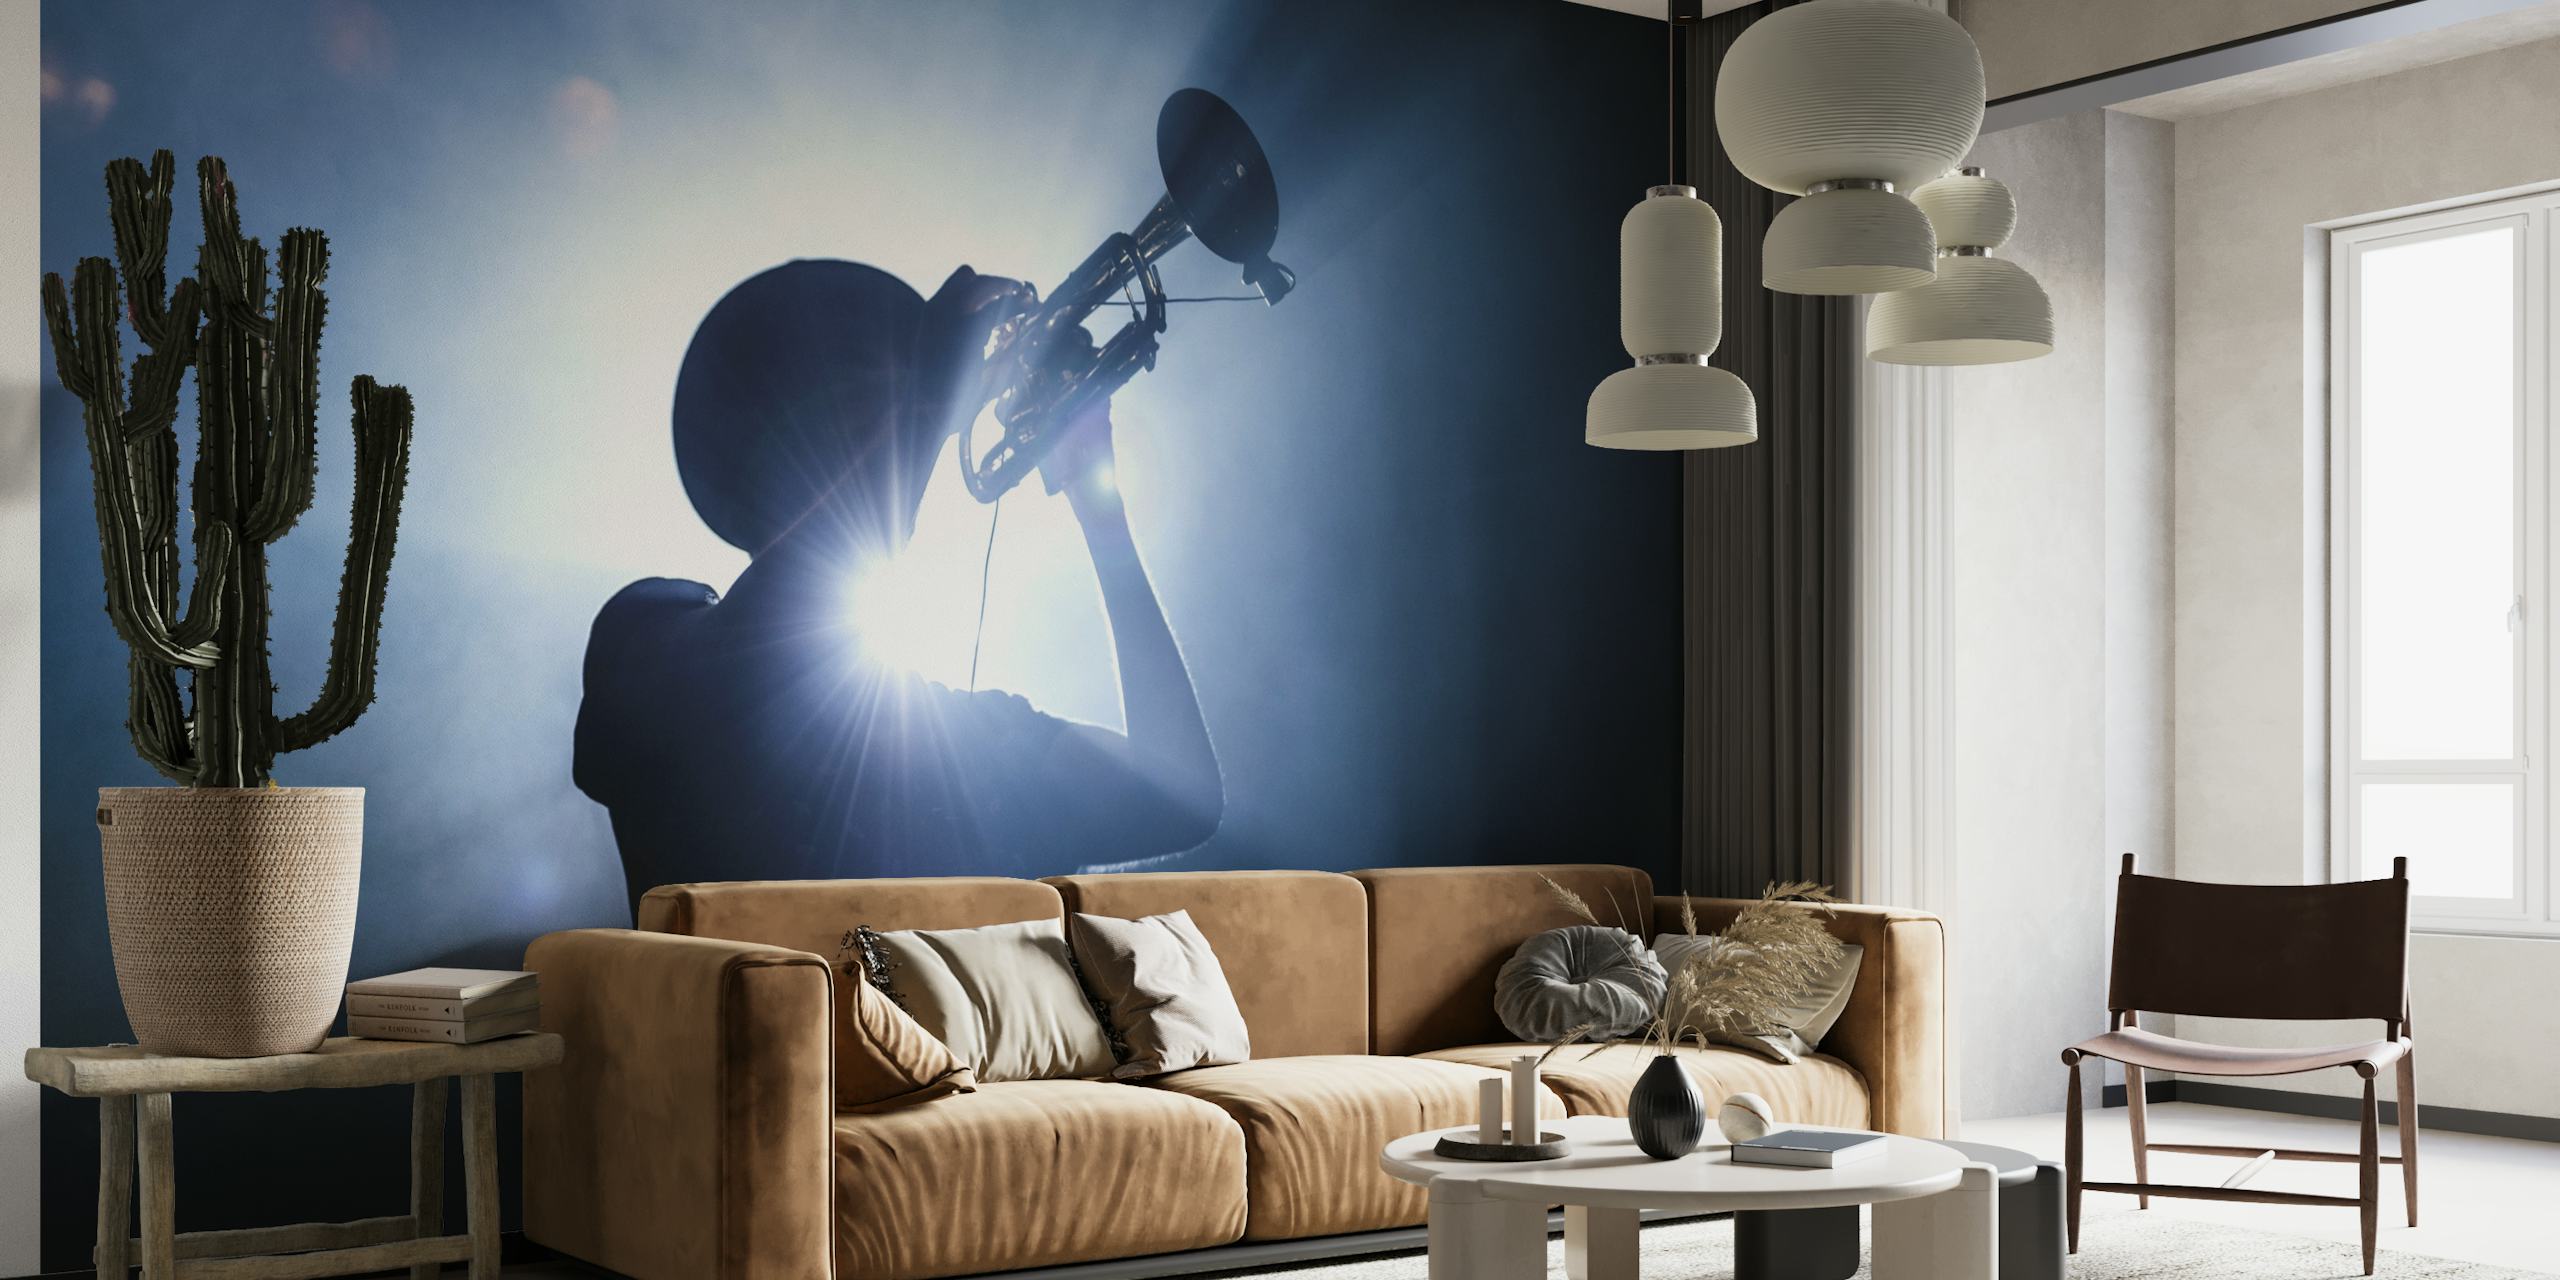 La silueta de un trompetista sobre un fondo iluminado y de mal humor, crea una imponente imagen mural en la pared.